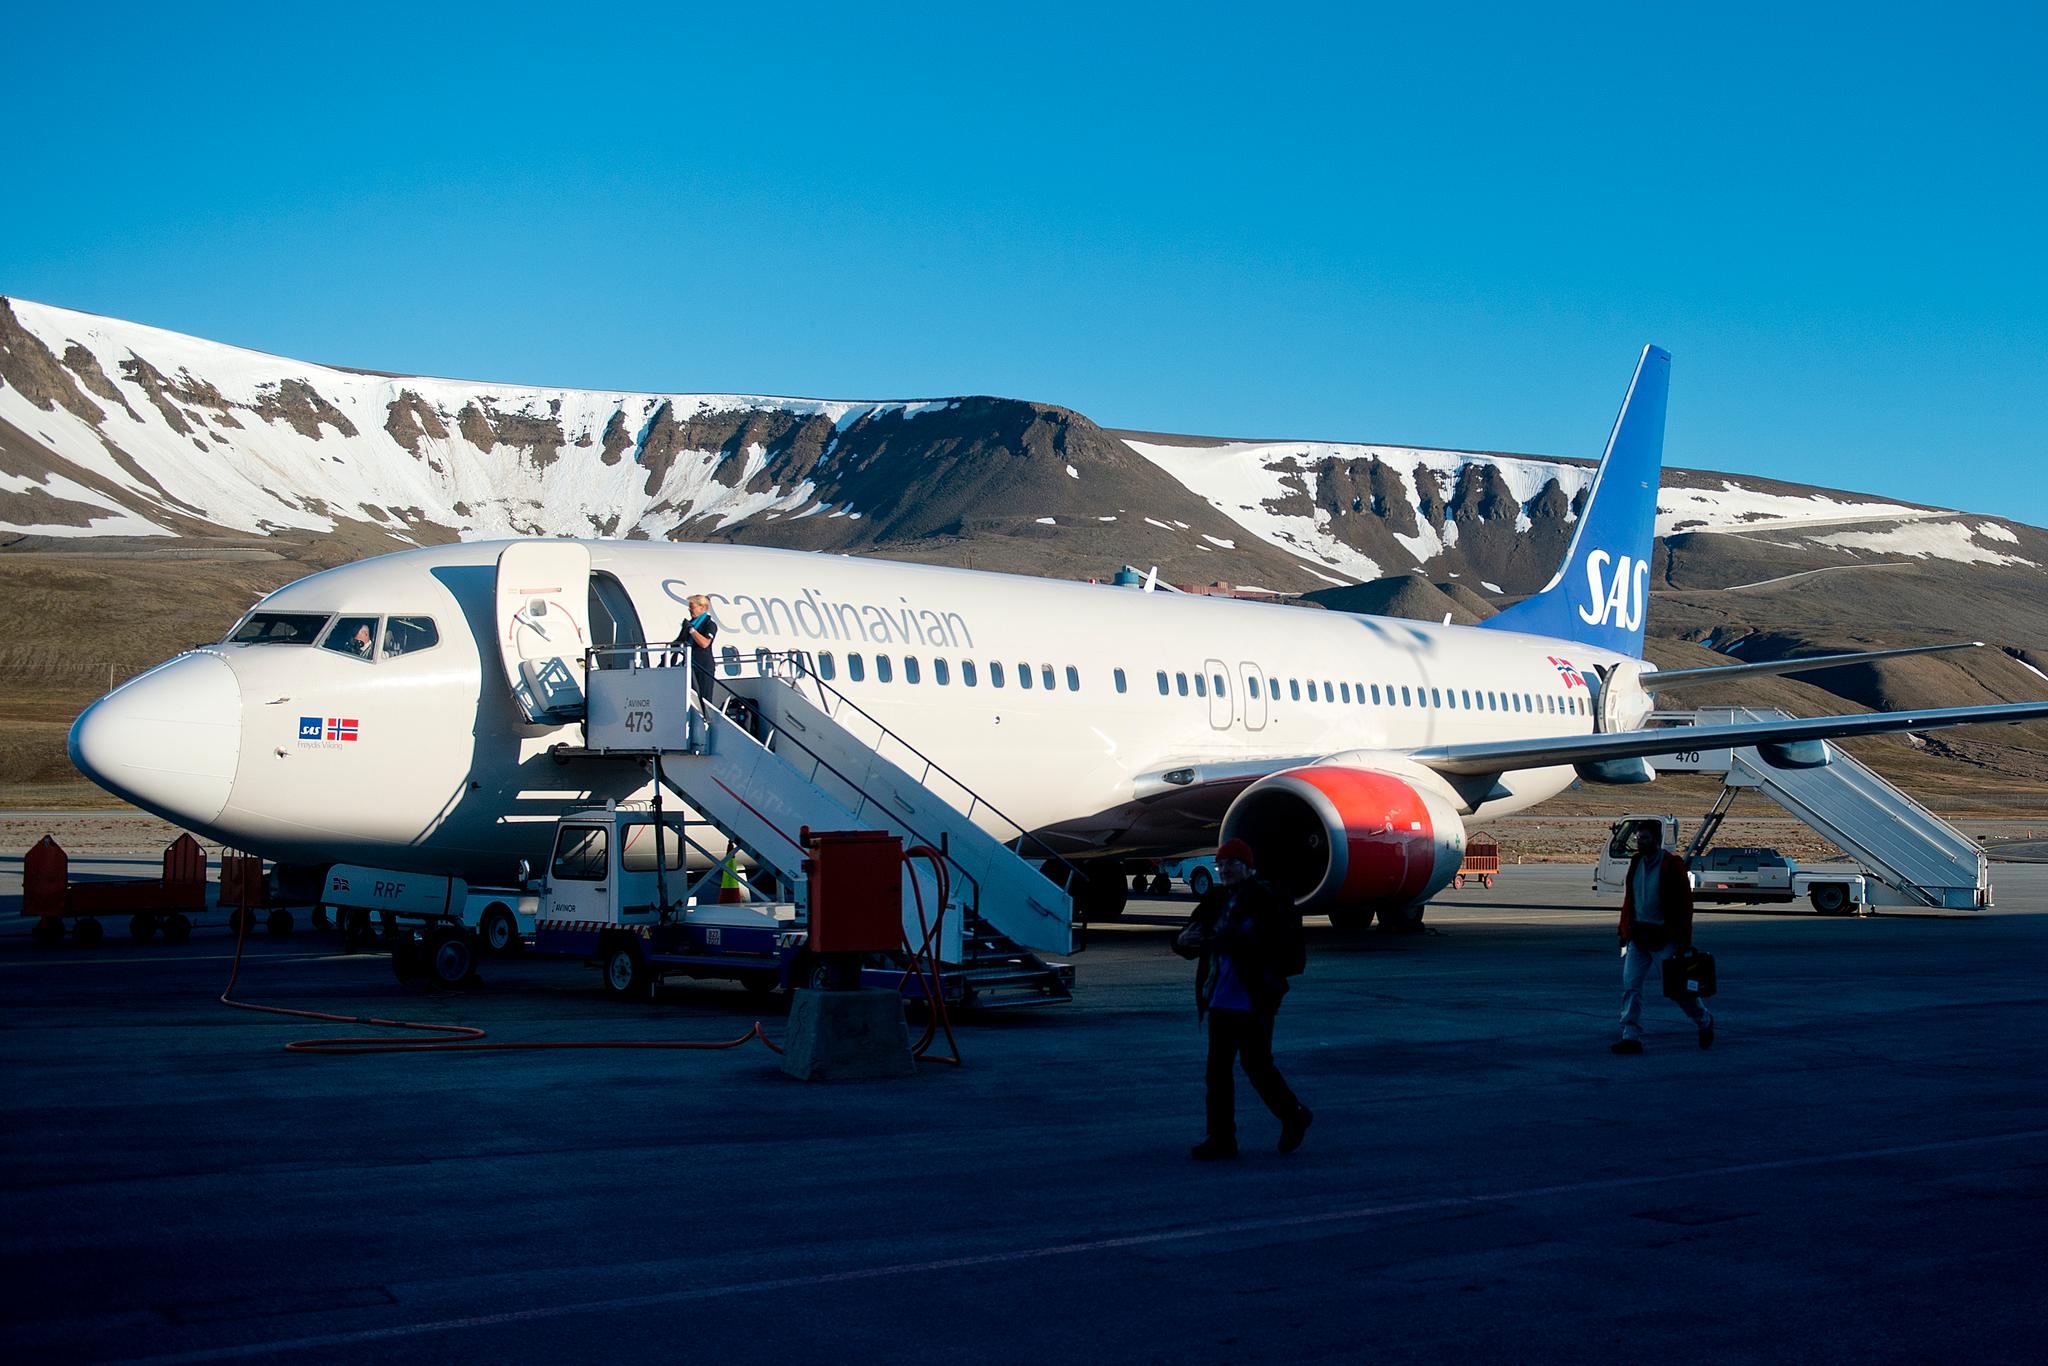 Et slikt fly skulle nok mange likt å se på Svalbard i disse dager. Dette ble fotografert i på Svalbard lufthavn i 2015. 